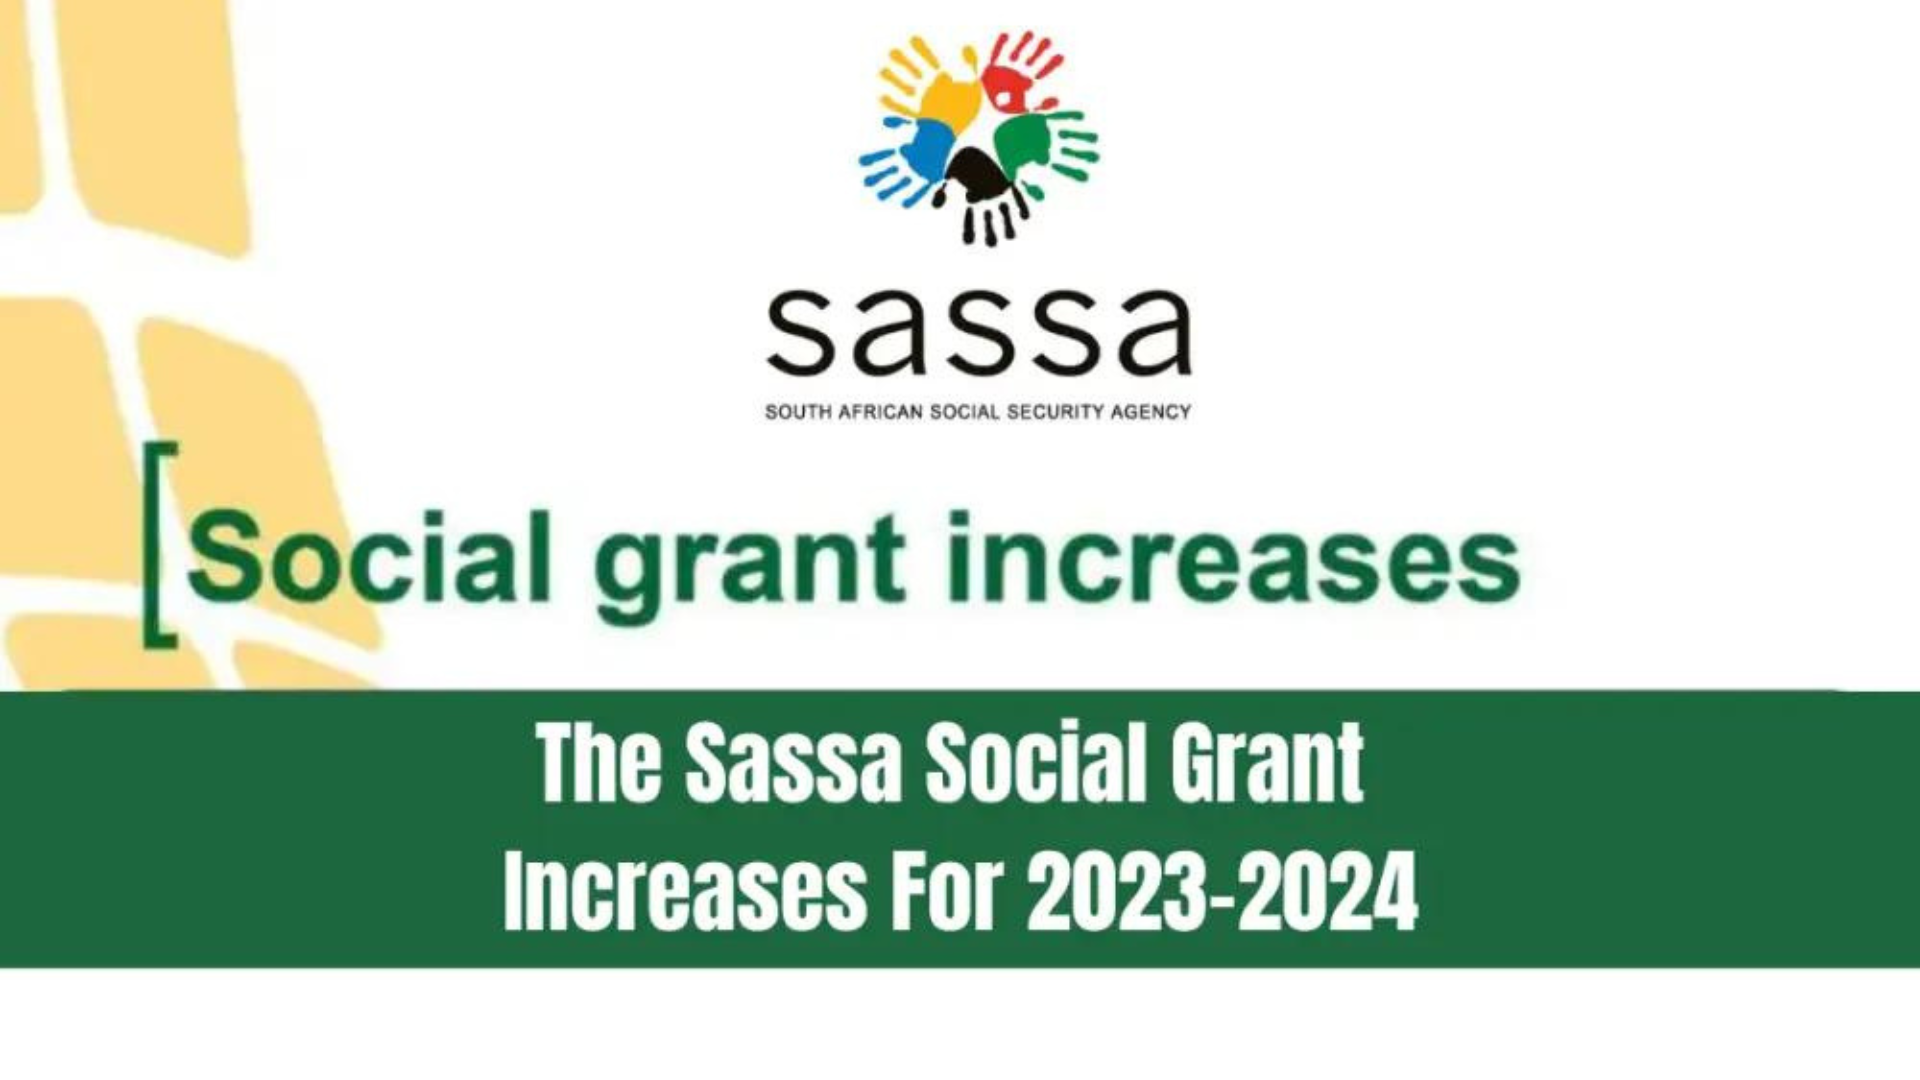 SASSA Increase 2024